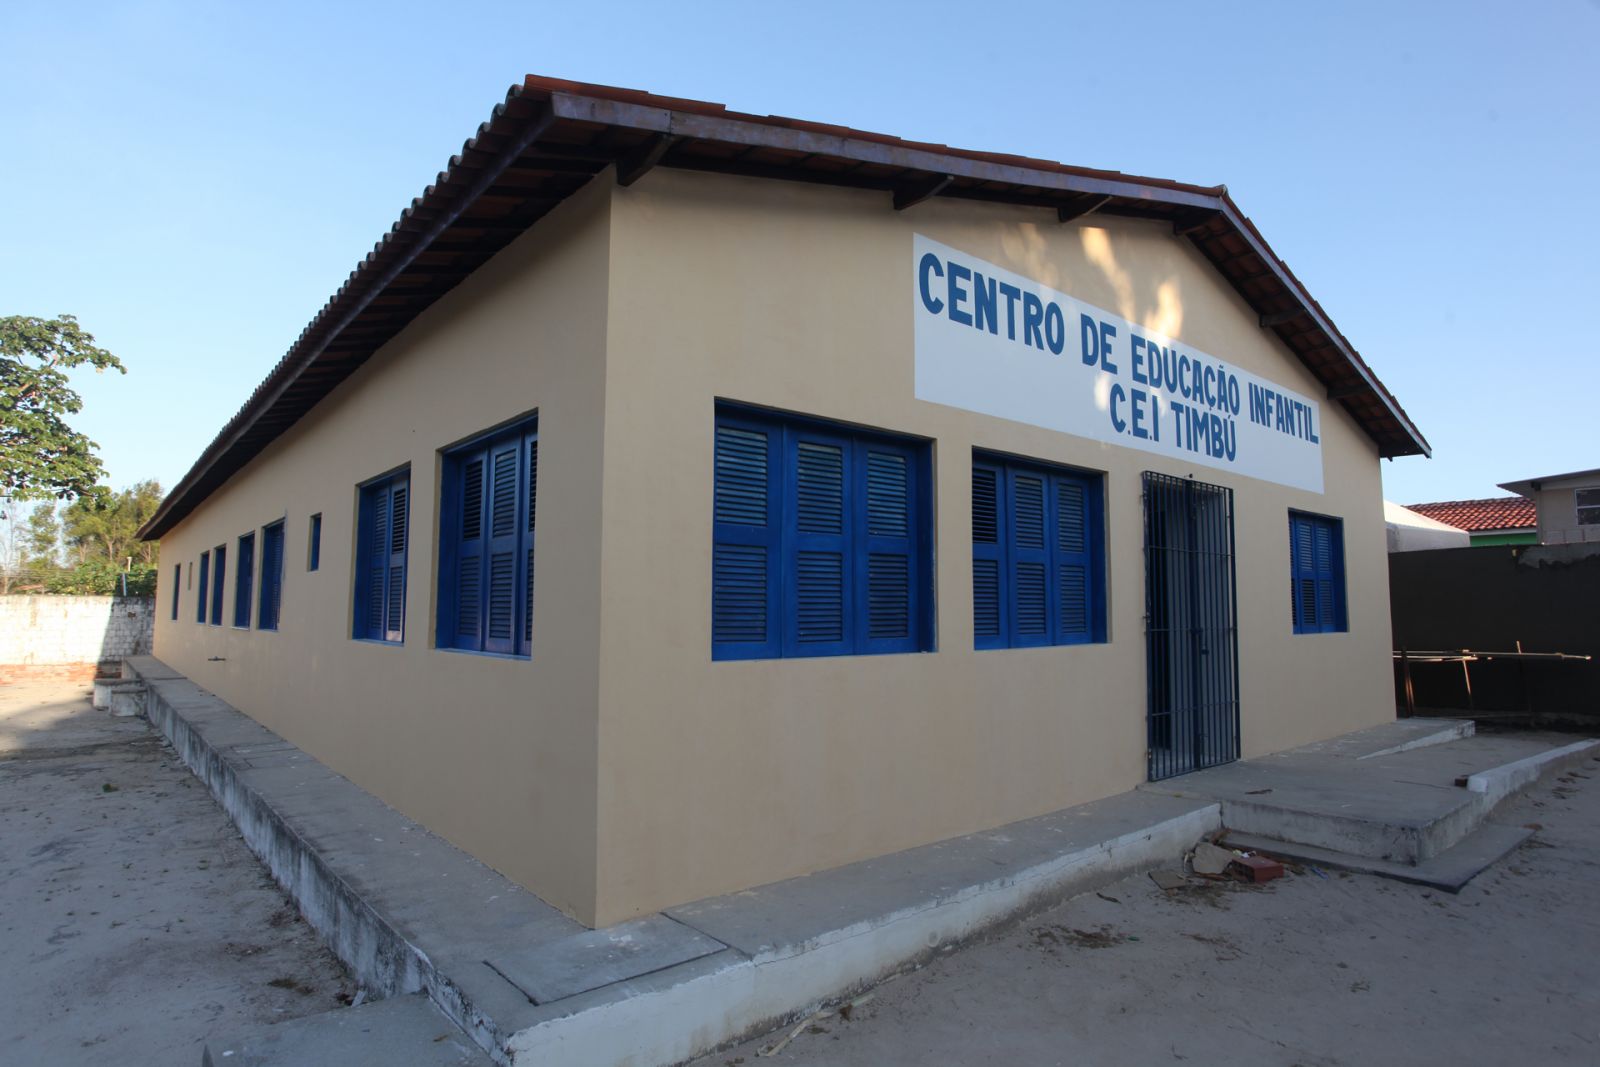 Prefeitura entrega no dia 14 o Centro de Educação Infantil Timbú